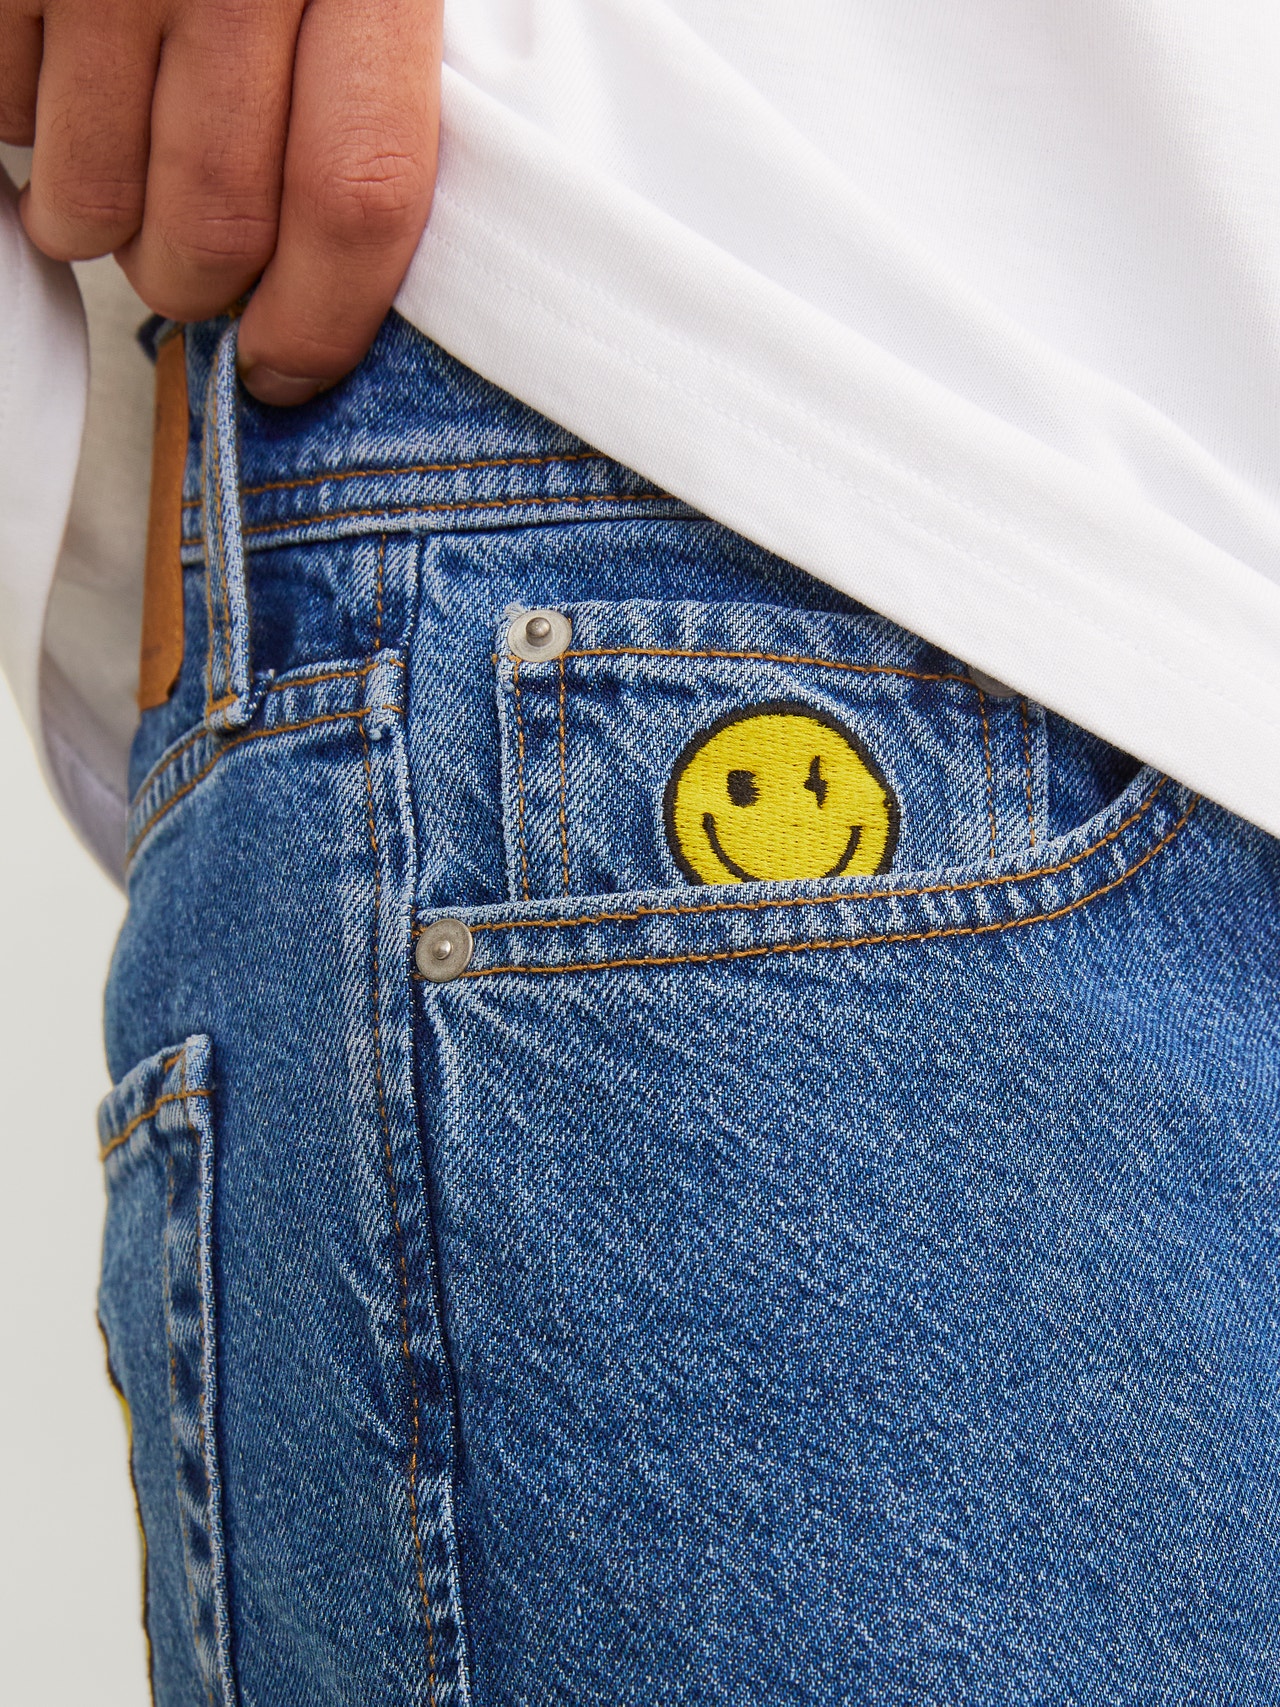 Jack & Jones JJIEDDIE JJORIGINAL SMILEY Jeans Loose fit -Blue Denim - 12261744